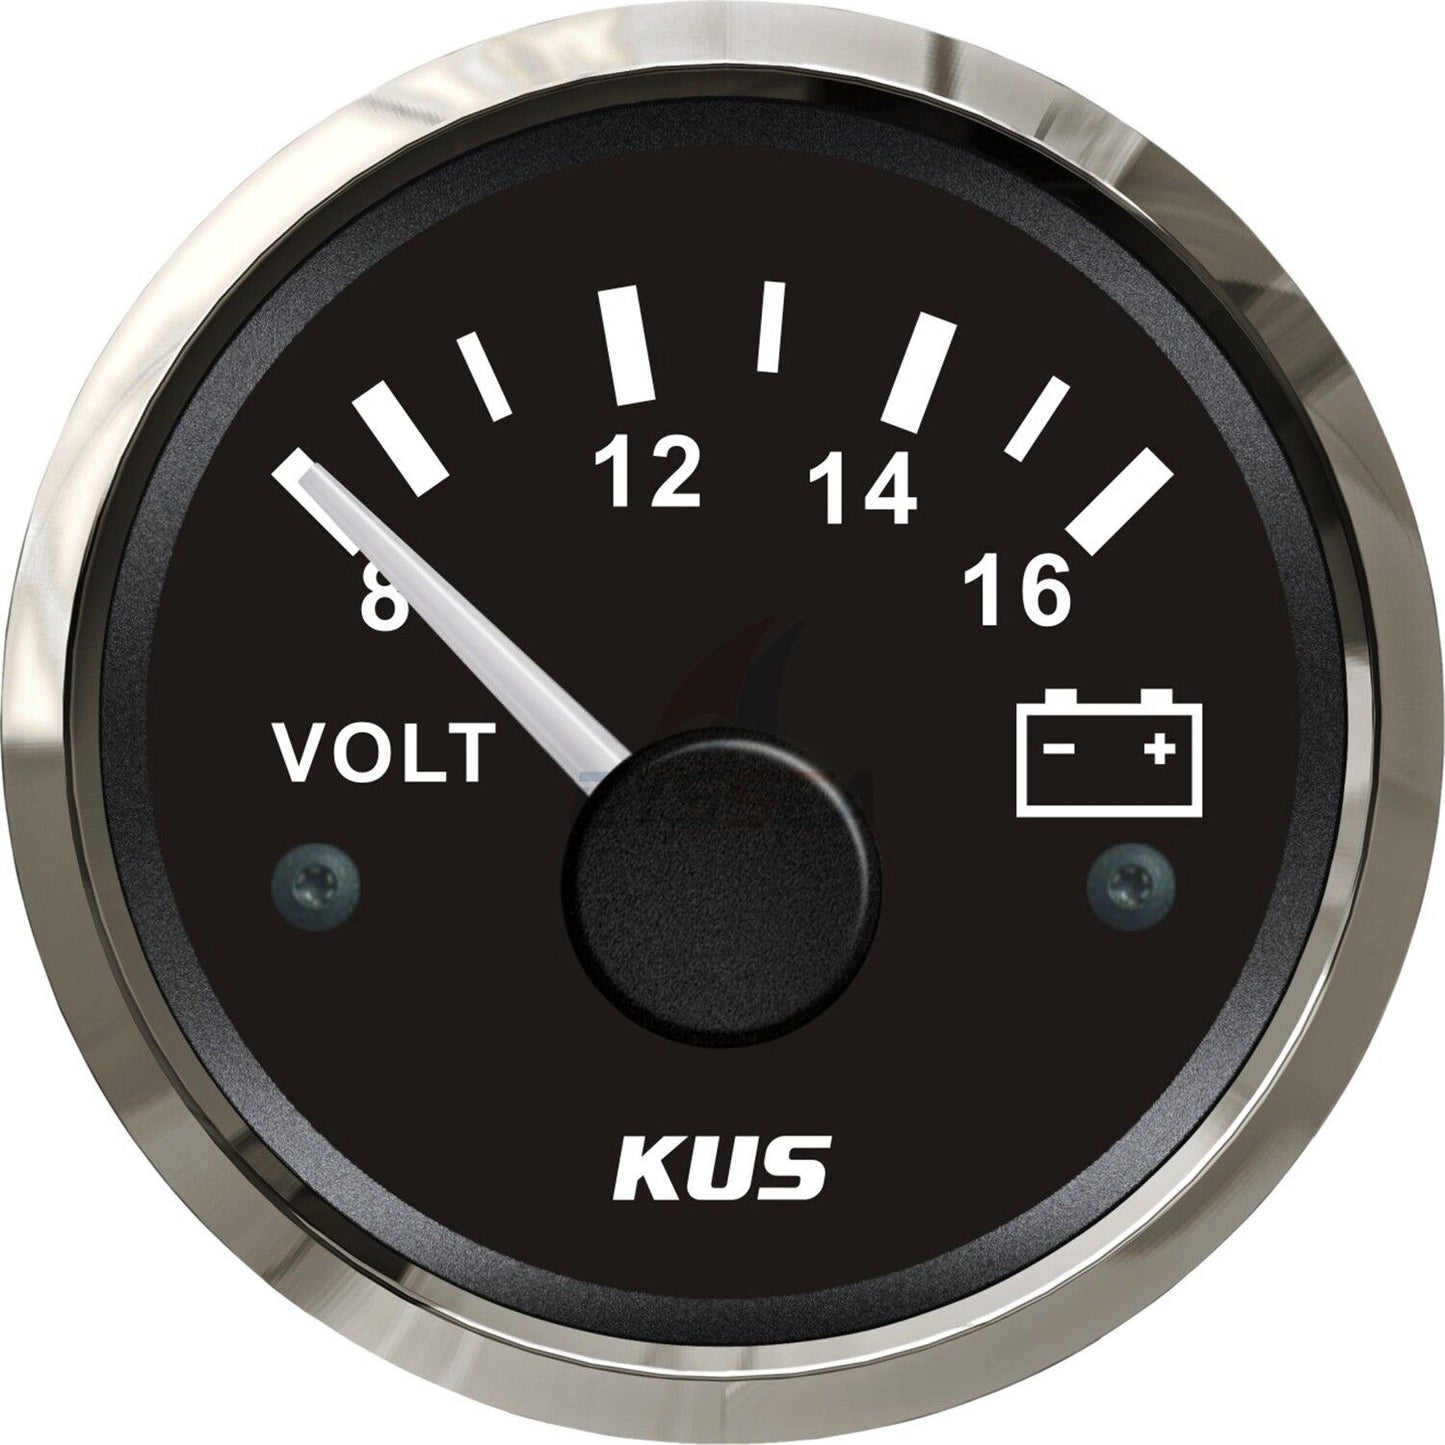 KUS Voltmeter Gauge Marine Boat Battery Voltage Meter Volt Indicator Stainless